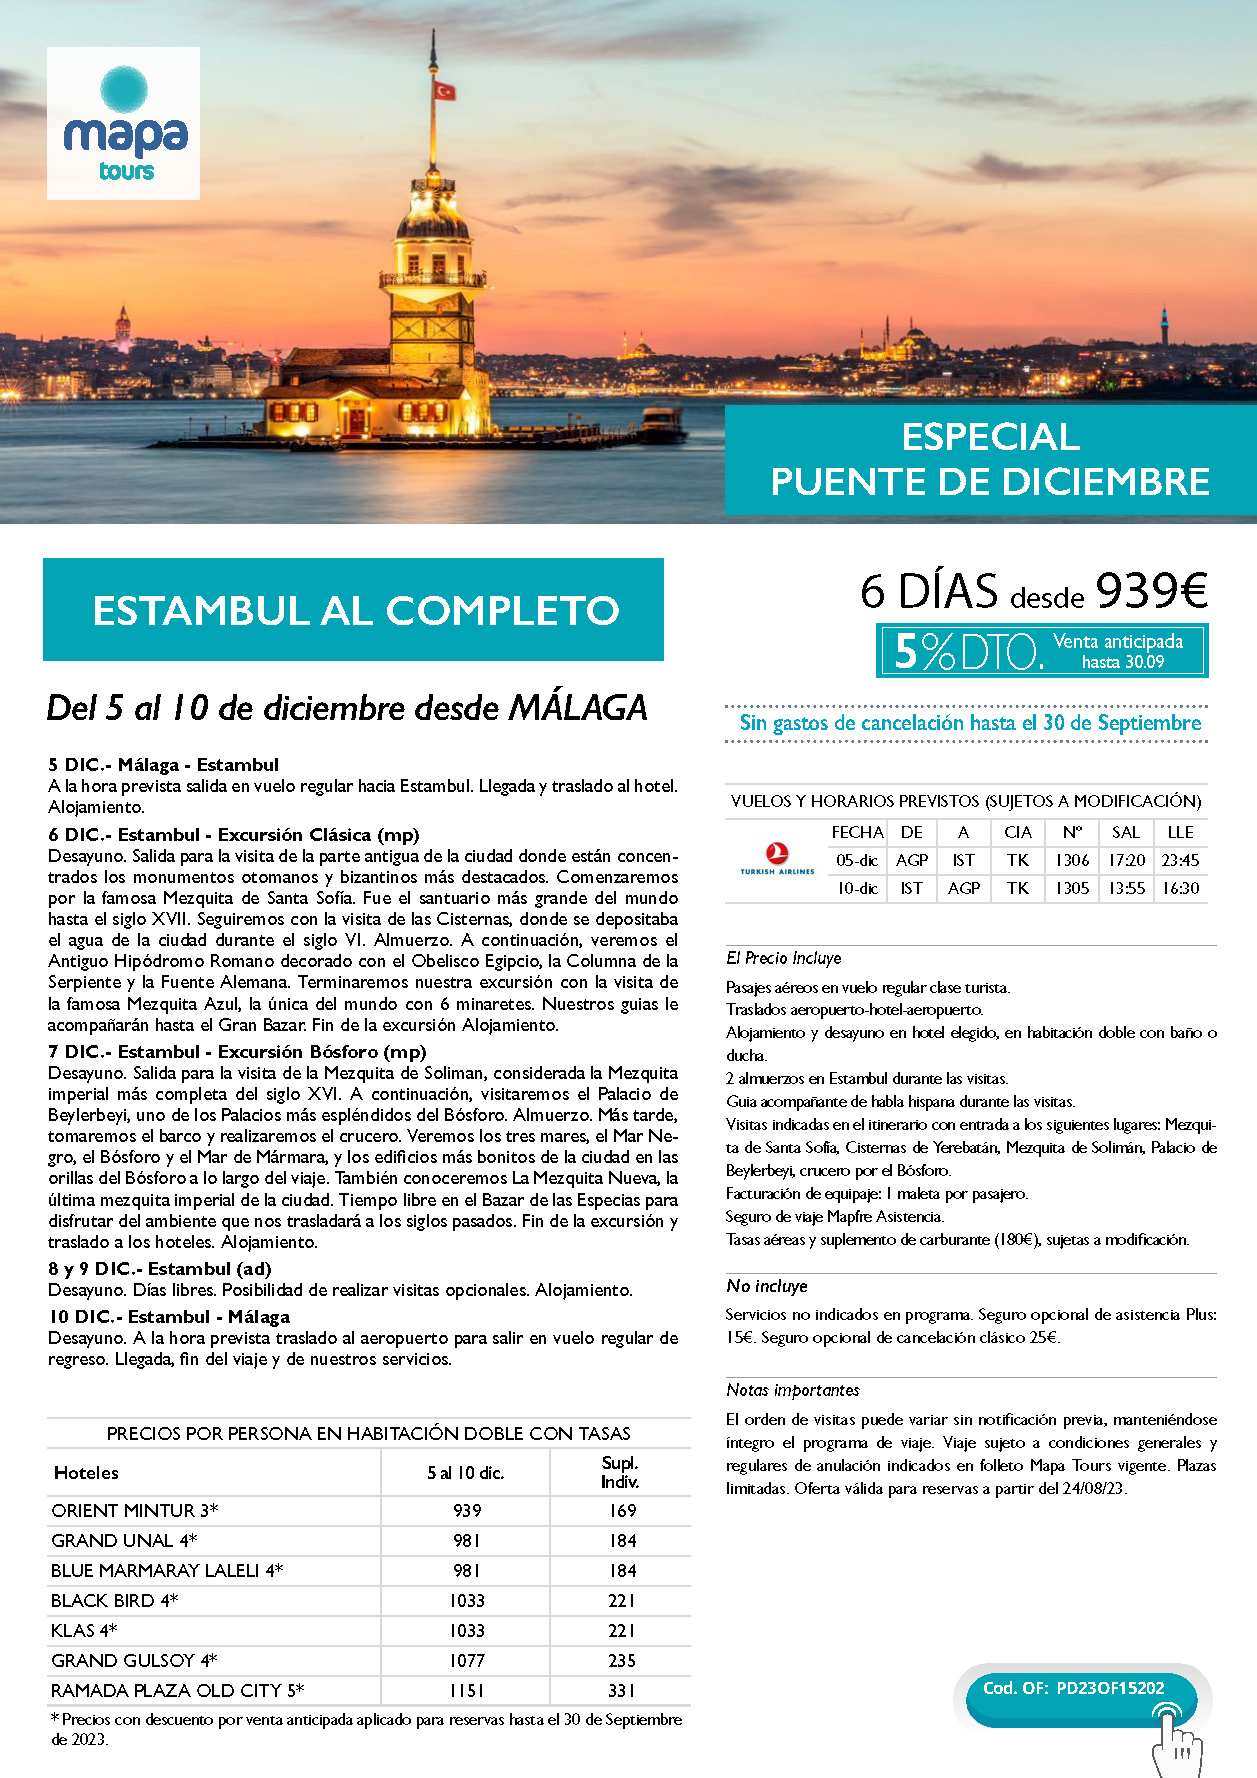 Oferta Mapa Tours Puente de Diciembre 2023 Estambul al Completo 6 dias salida 5 de diciembre en vuelo directo desde Malaga